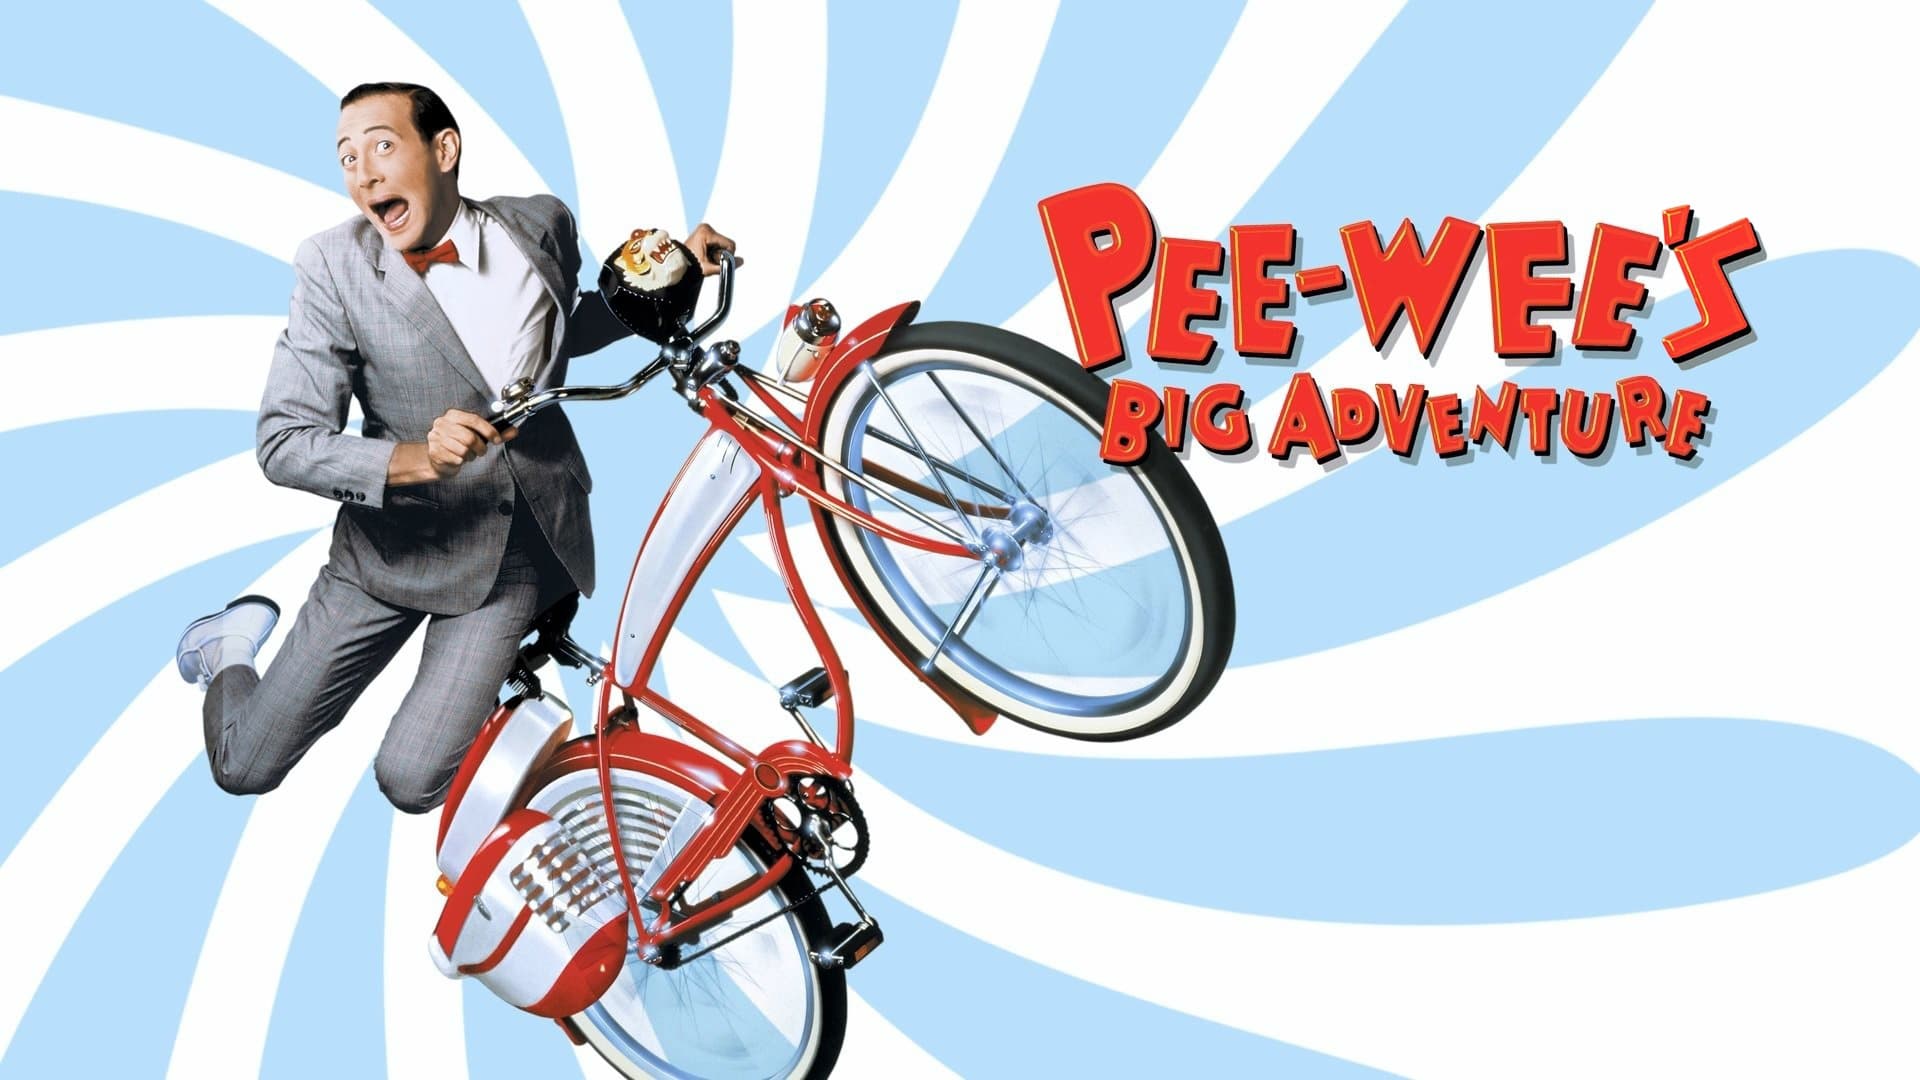 La gran aventura de Pee-Wee